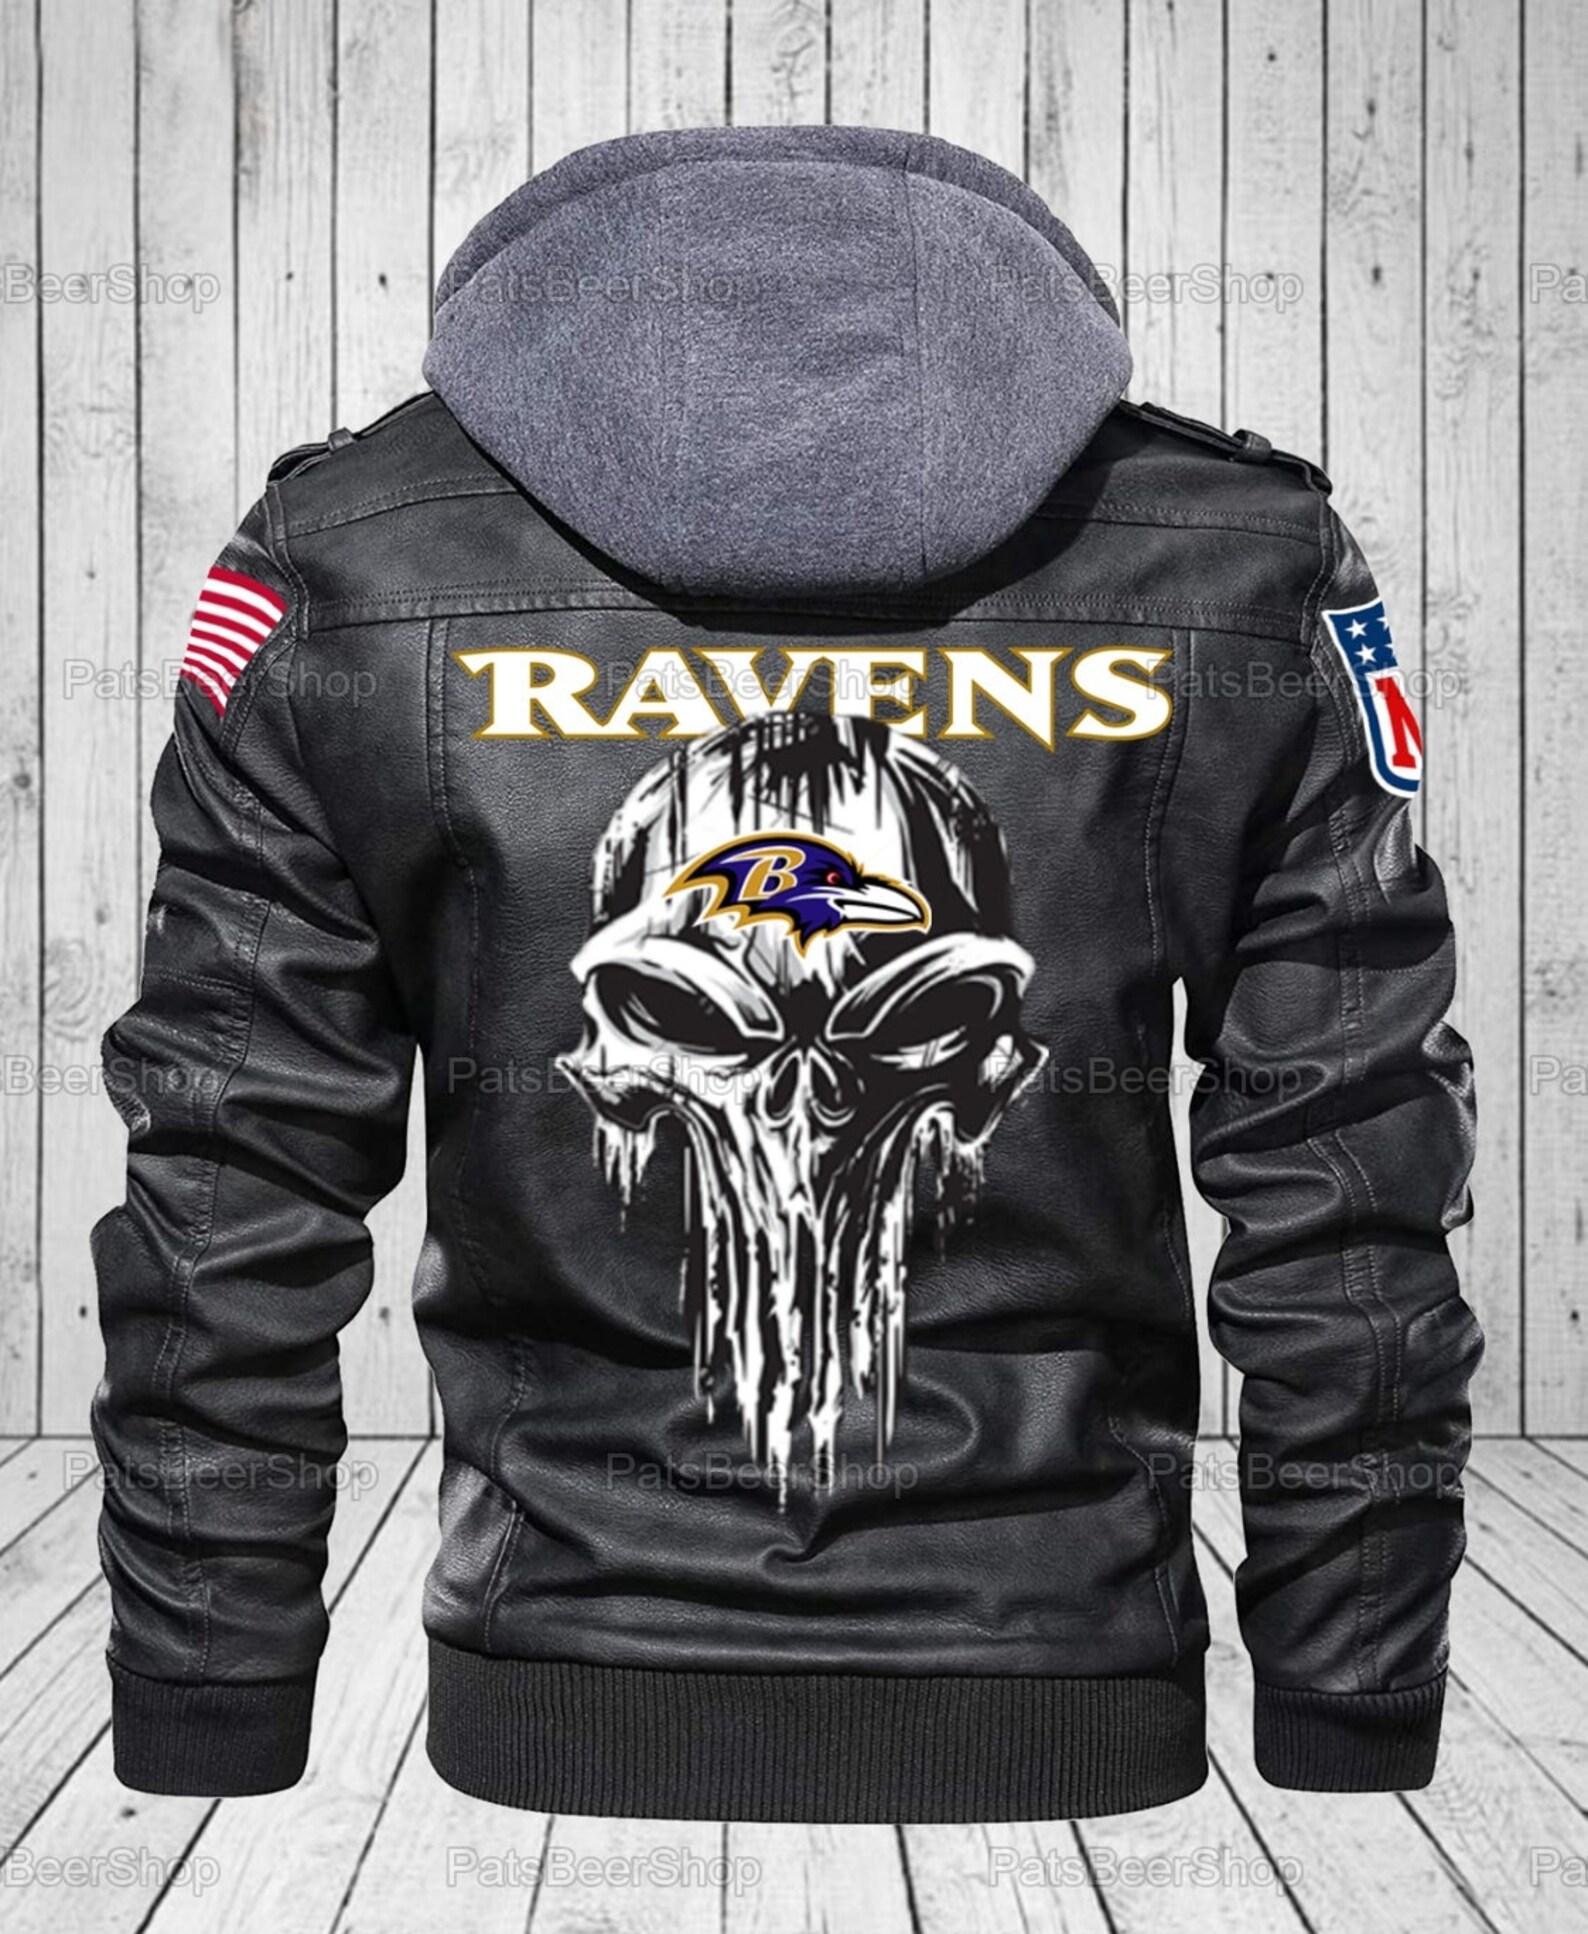 Baltimore Ravens NFL Leather Jackets Skull Punisher Jackets | Etsy